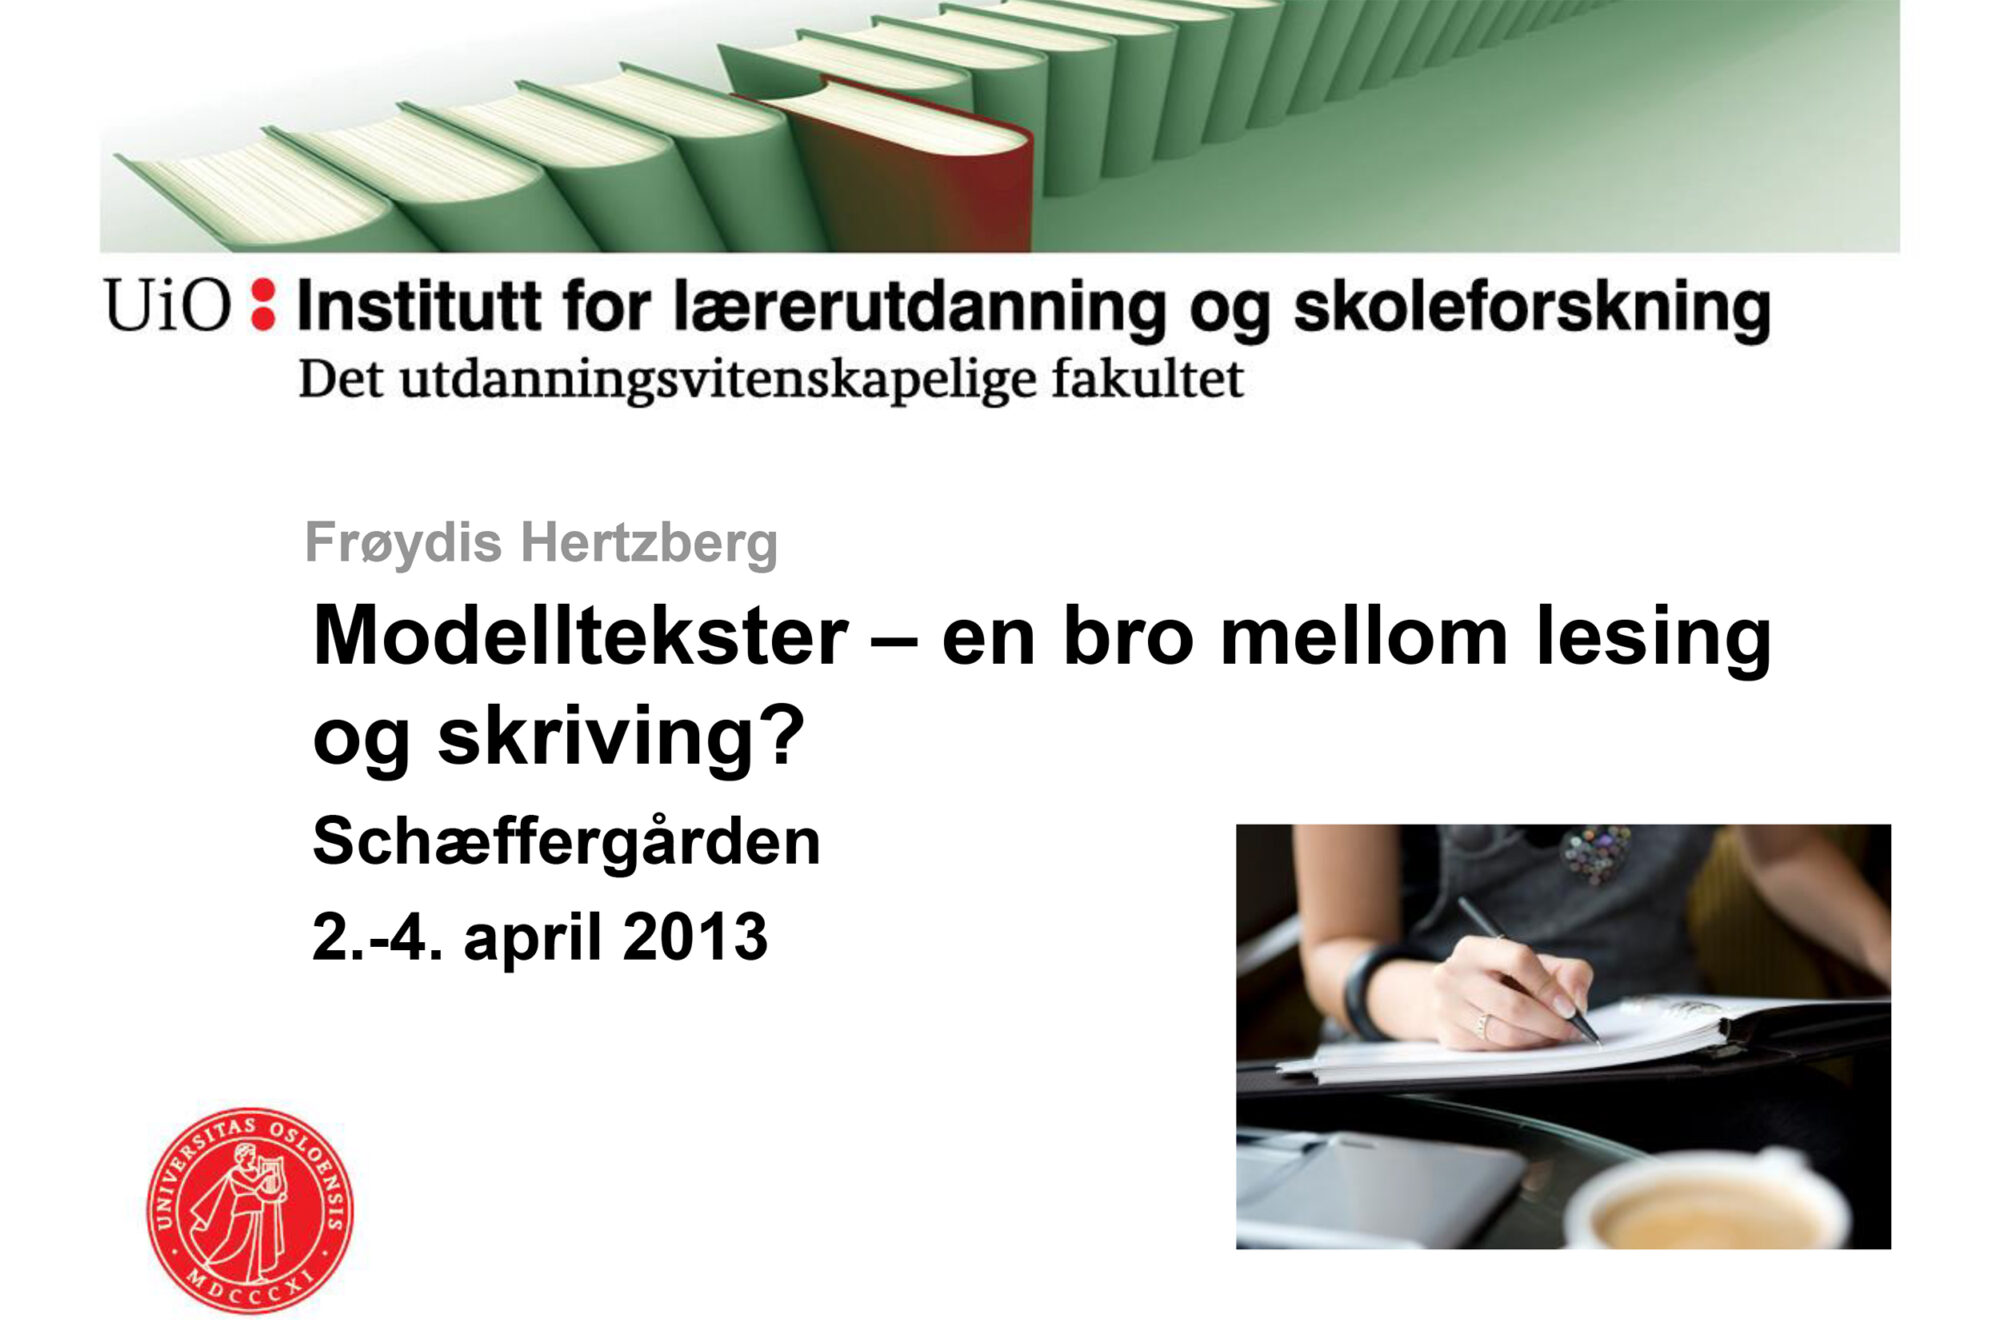 Forside på Powerpoint-presentasjon til Frøydis Hertzberg : Modelltekster - En bro mellom lesing og skriving